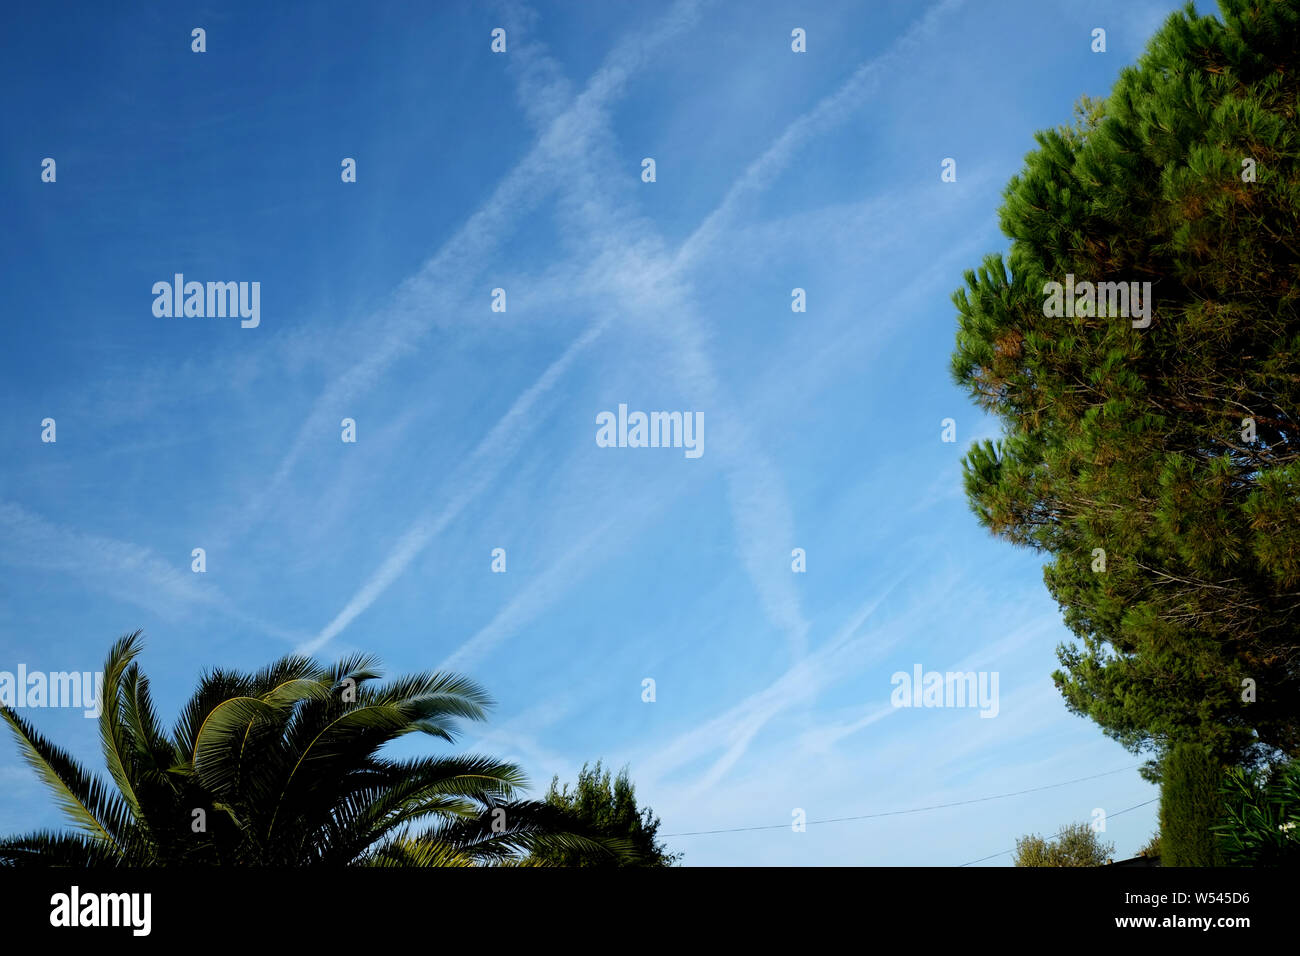 Flugzeug Wanderwege in einem blauen Himmel im Süden von Frankreich, die zeigen, wie beschäftigt die Gegend ist, die mit dem Übertragen von Flugzeugen. Die reisebranche Konzept Bild. Stockfoto